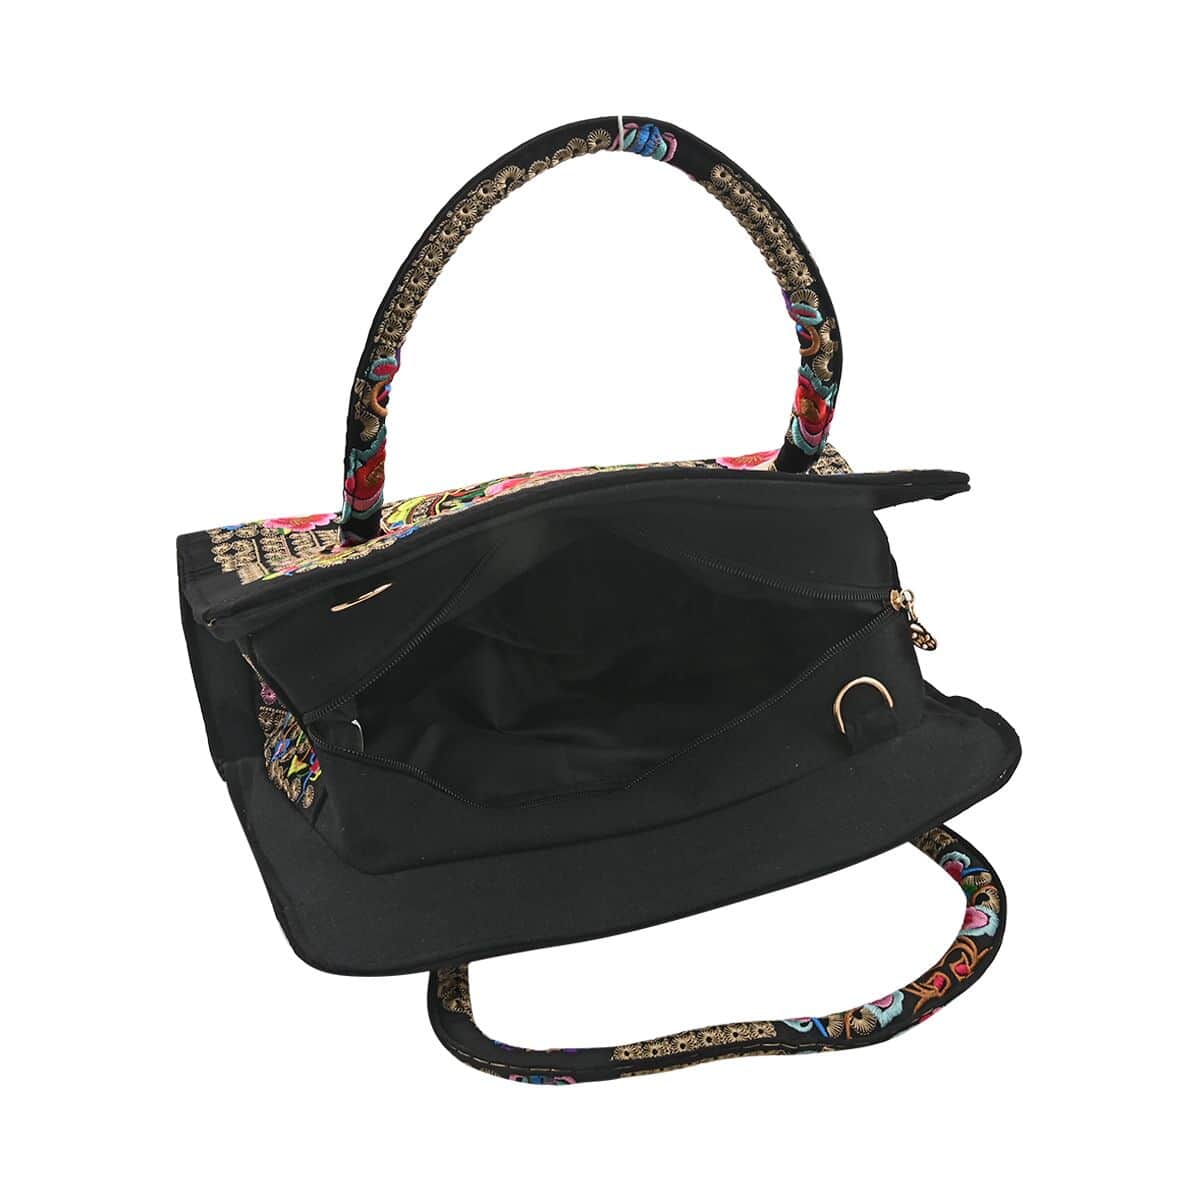 Multi Color Floral Embroidered Handbag with Shoulder Strap image number 4